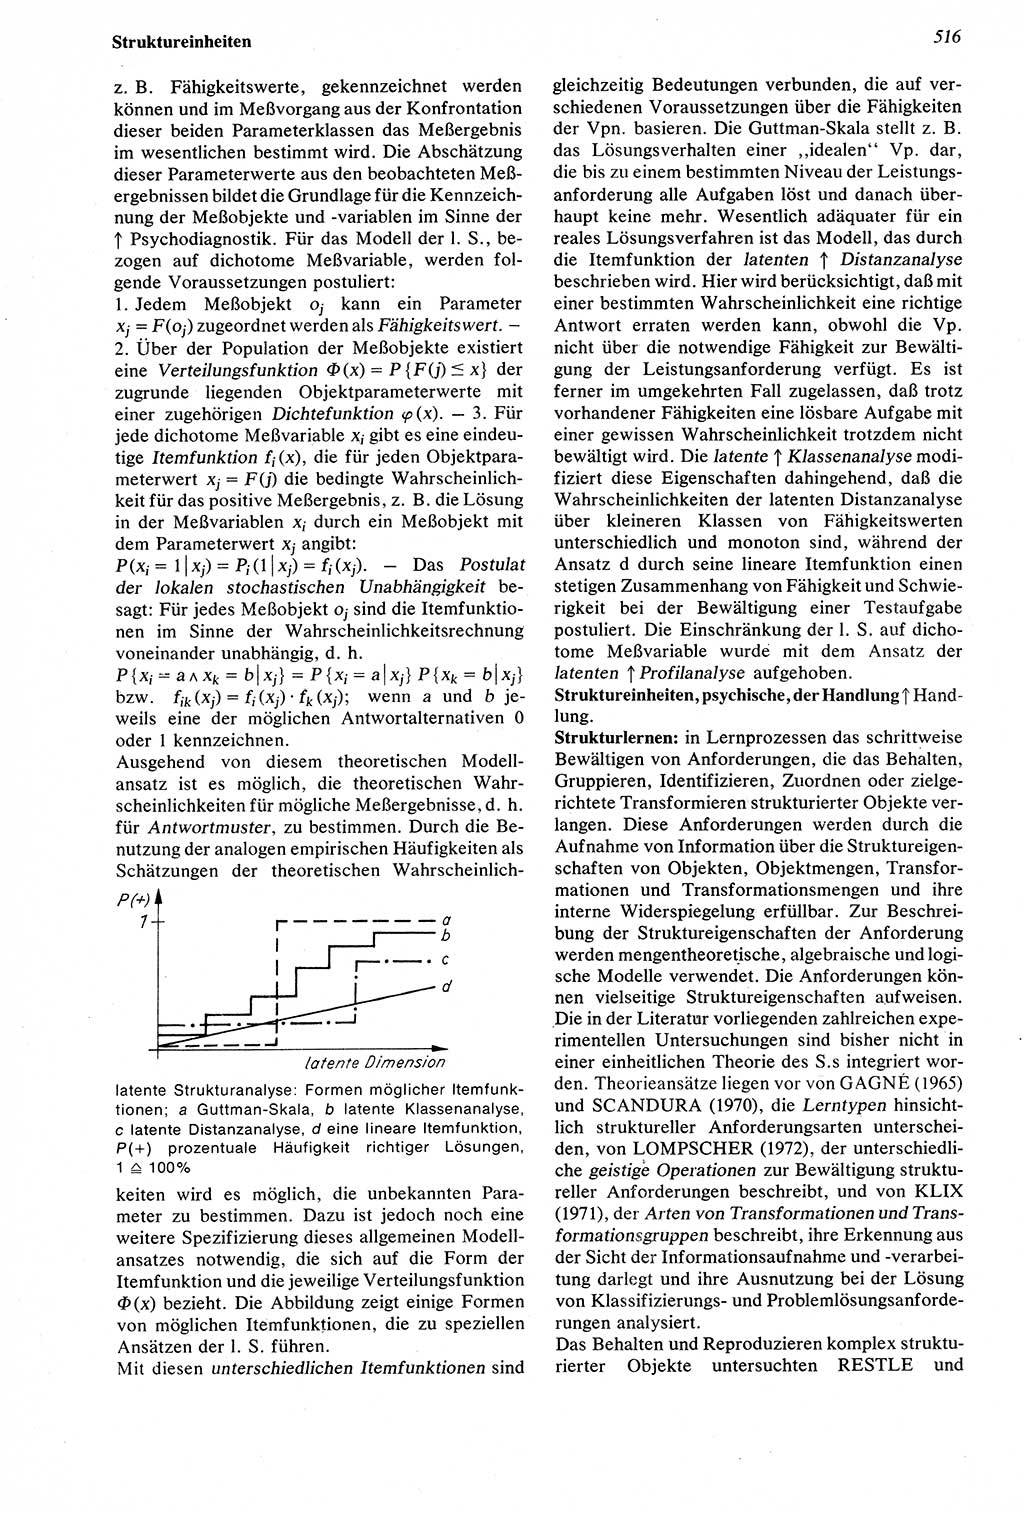 Wörterbuch der Psychologie [Deutsche Demokratische Republik (DDR)] 1976, Seite 516 (Wb. Psych. DDR 1976, S. 516)